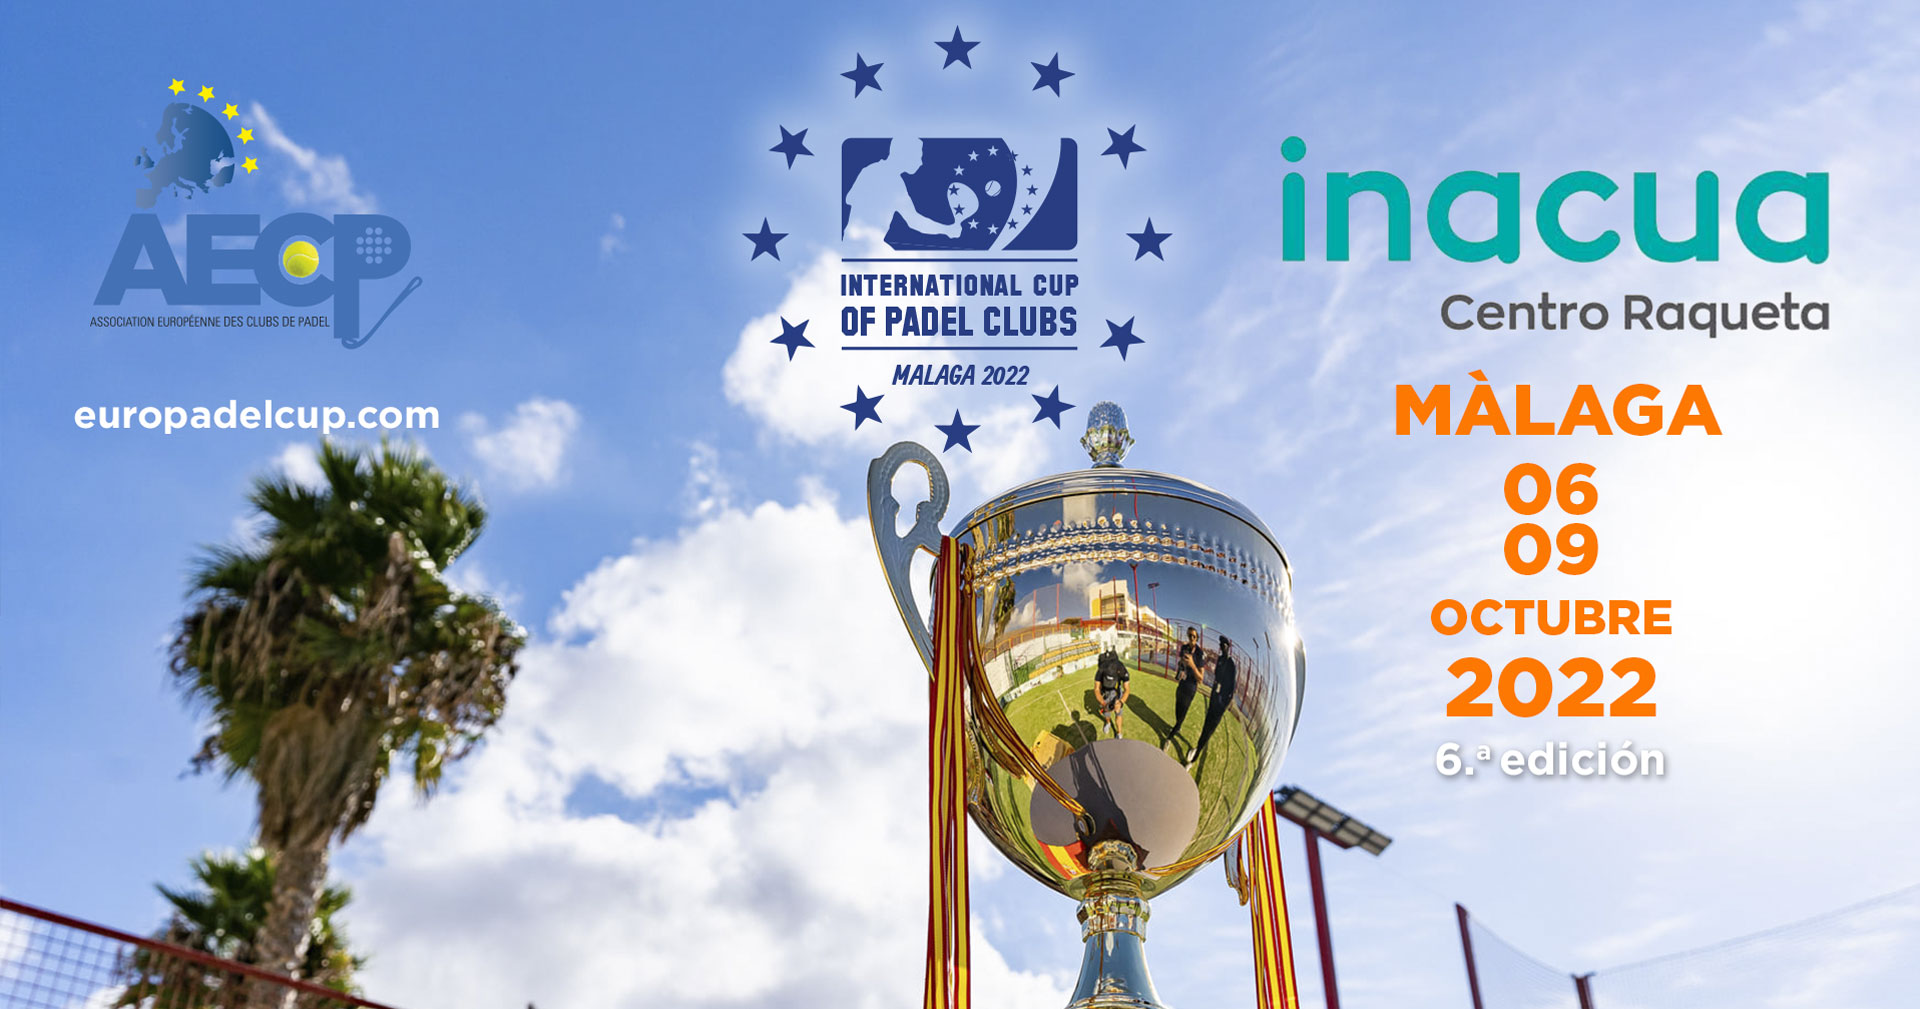 EFCA lancerer International Cup of Clubs af Padel